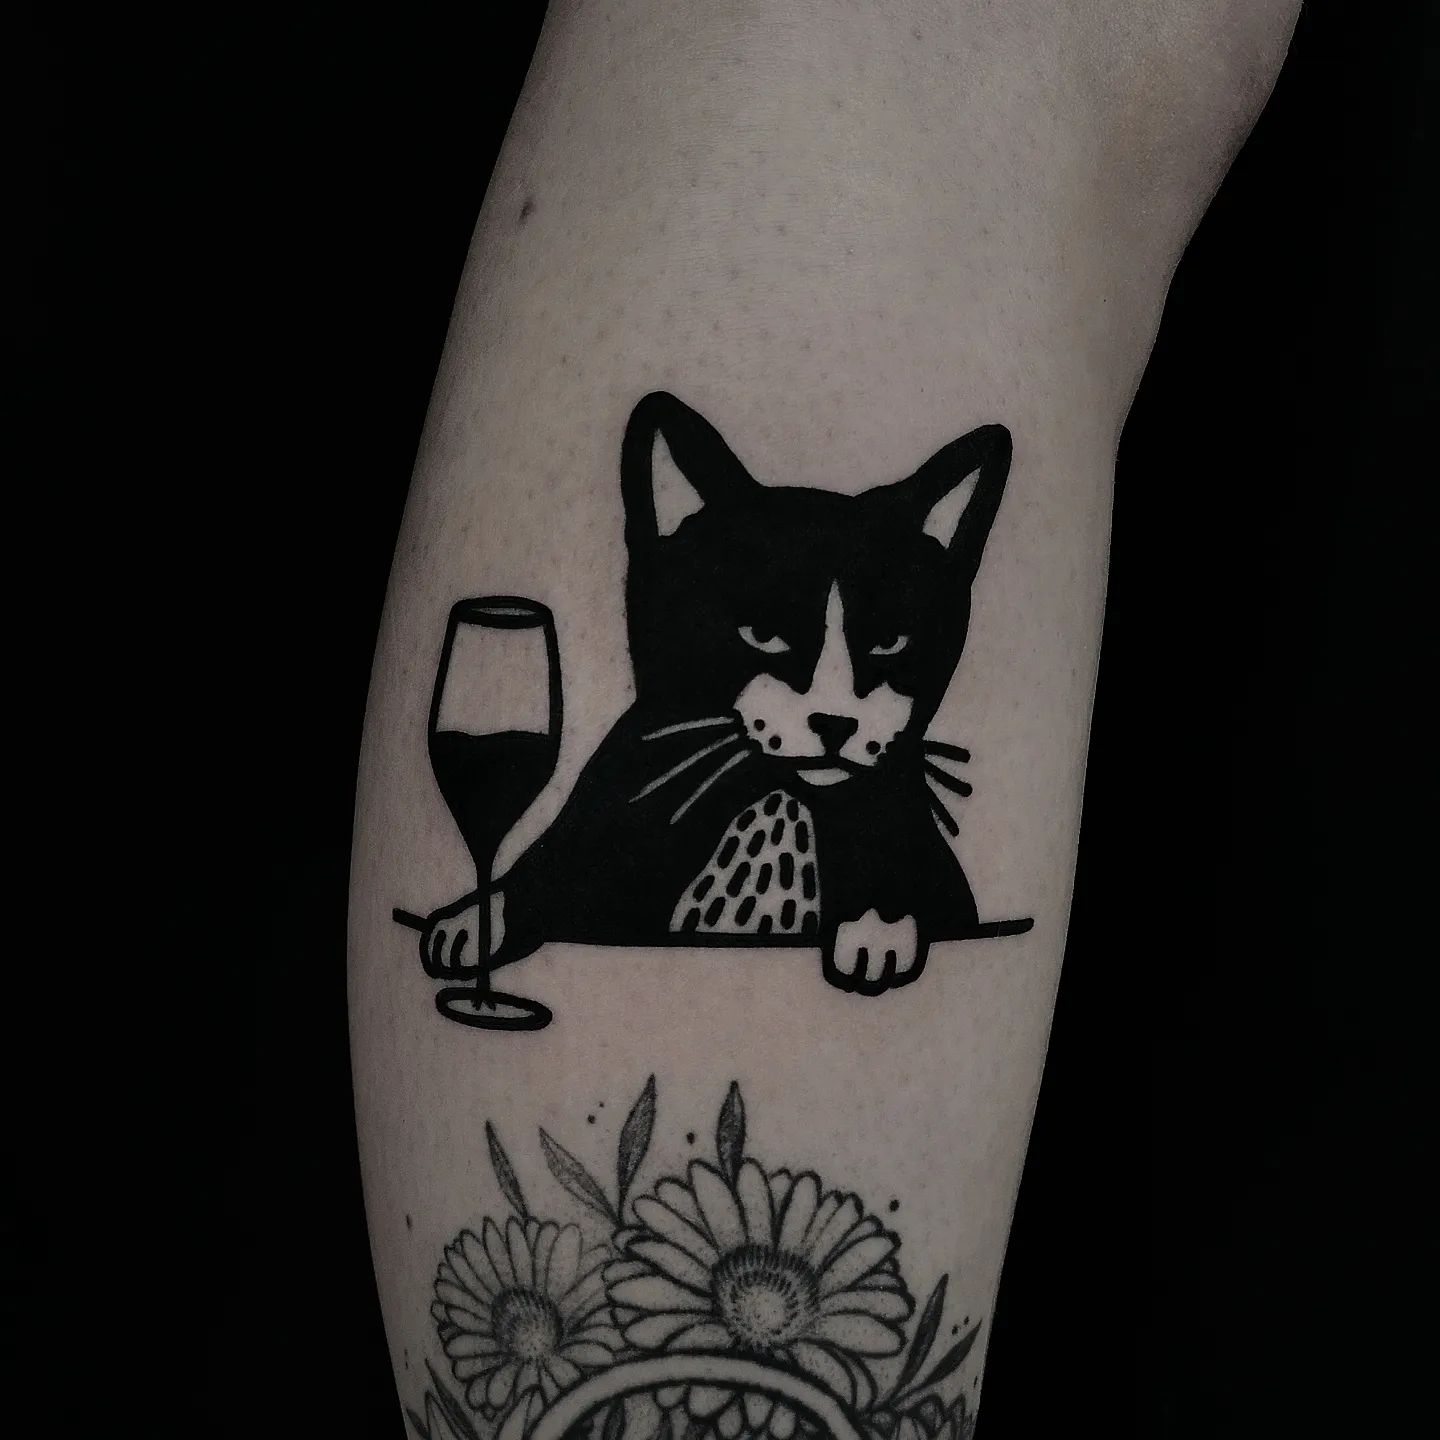 Black ink cat tattoo by nem il